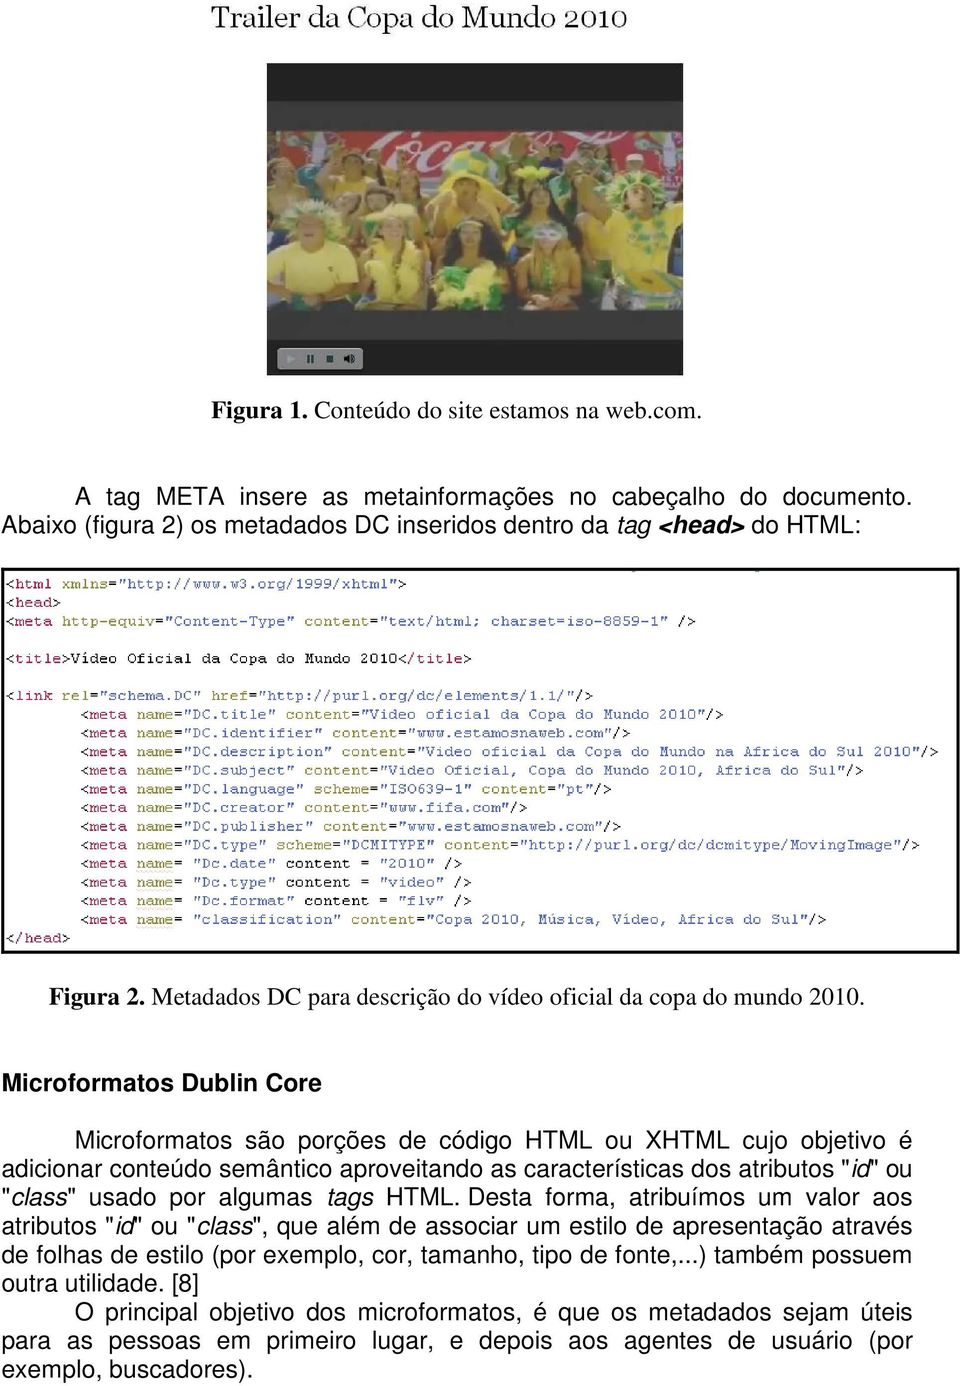 Microformatos Dublin Core Microformatos são porções de código HTML ou XHTML cujo objetivo é adicionar conteúdo semântico aproveitando as características dos atributos "id" ou "class" usado por